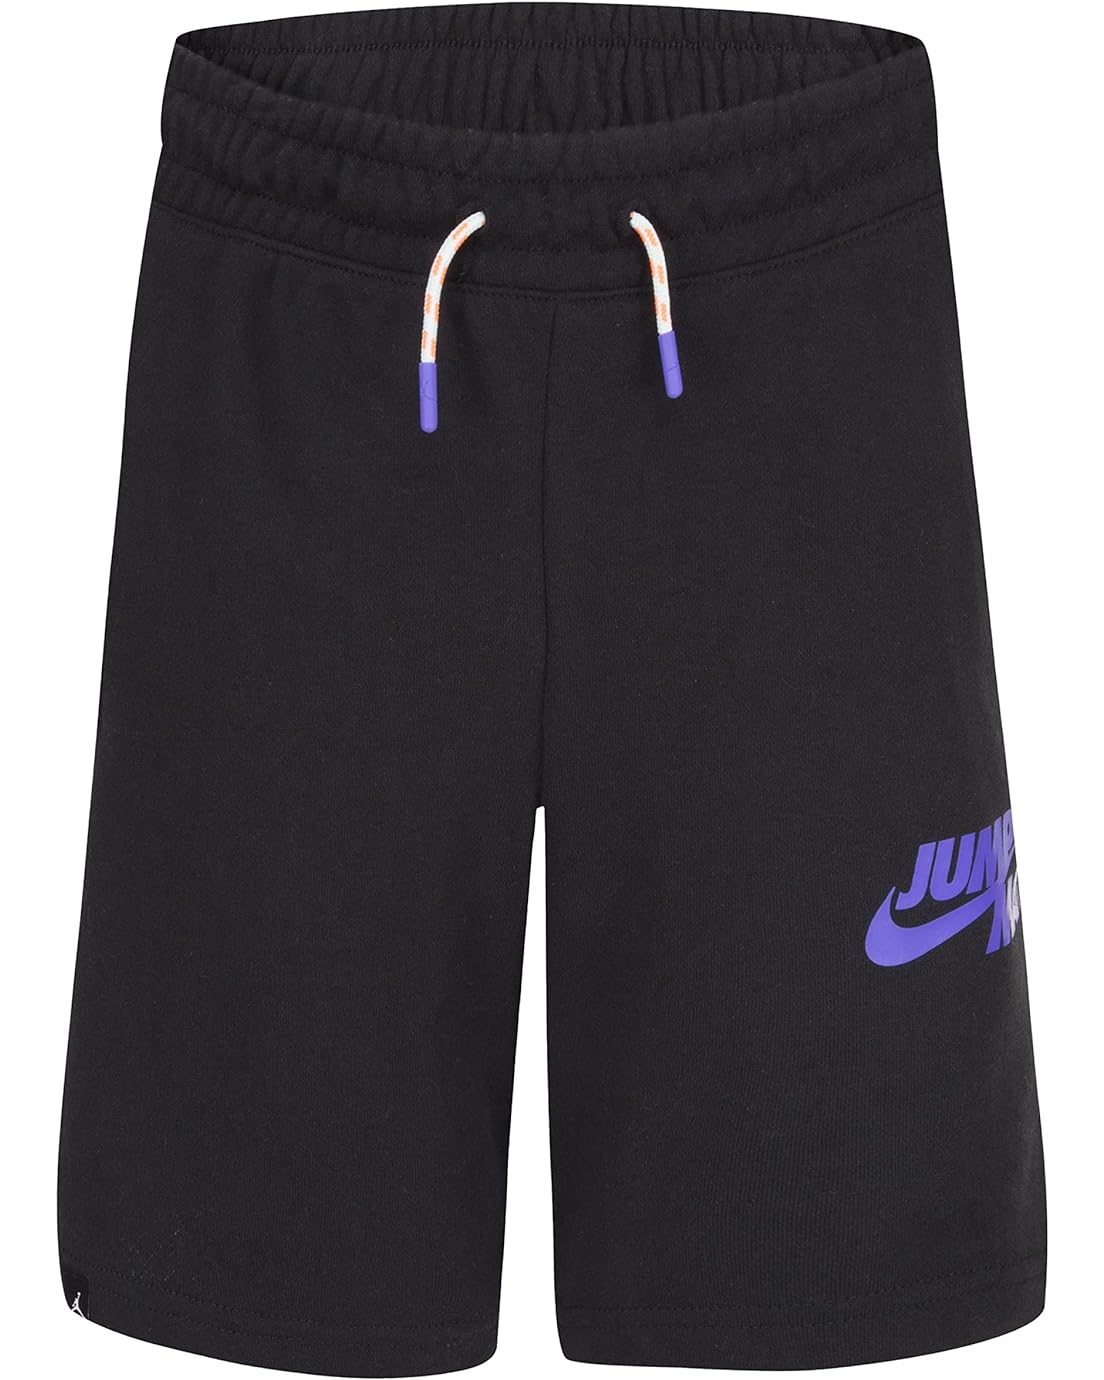  Jordan Kids Jumpman X Nike Fit Shorts (Big Kids)